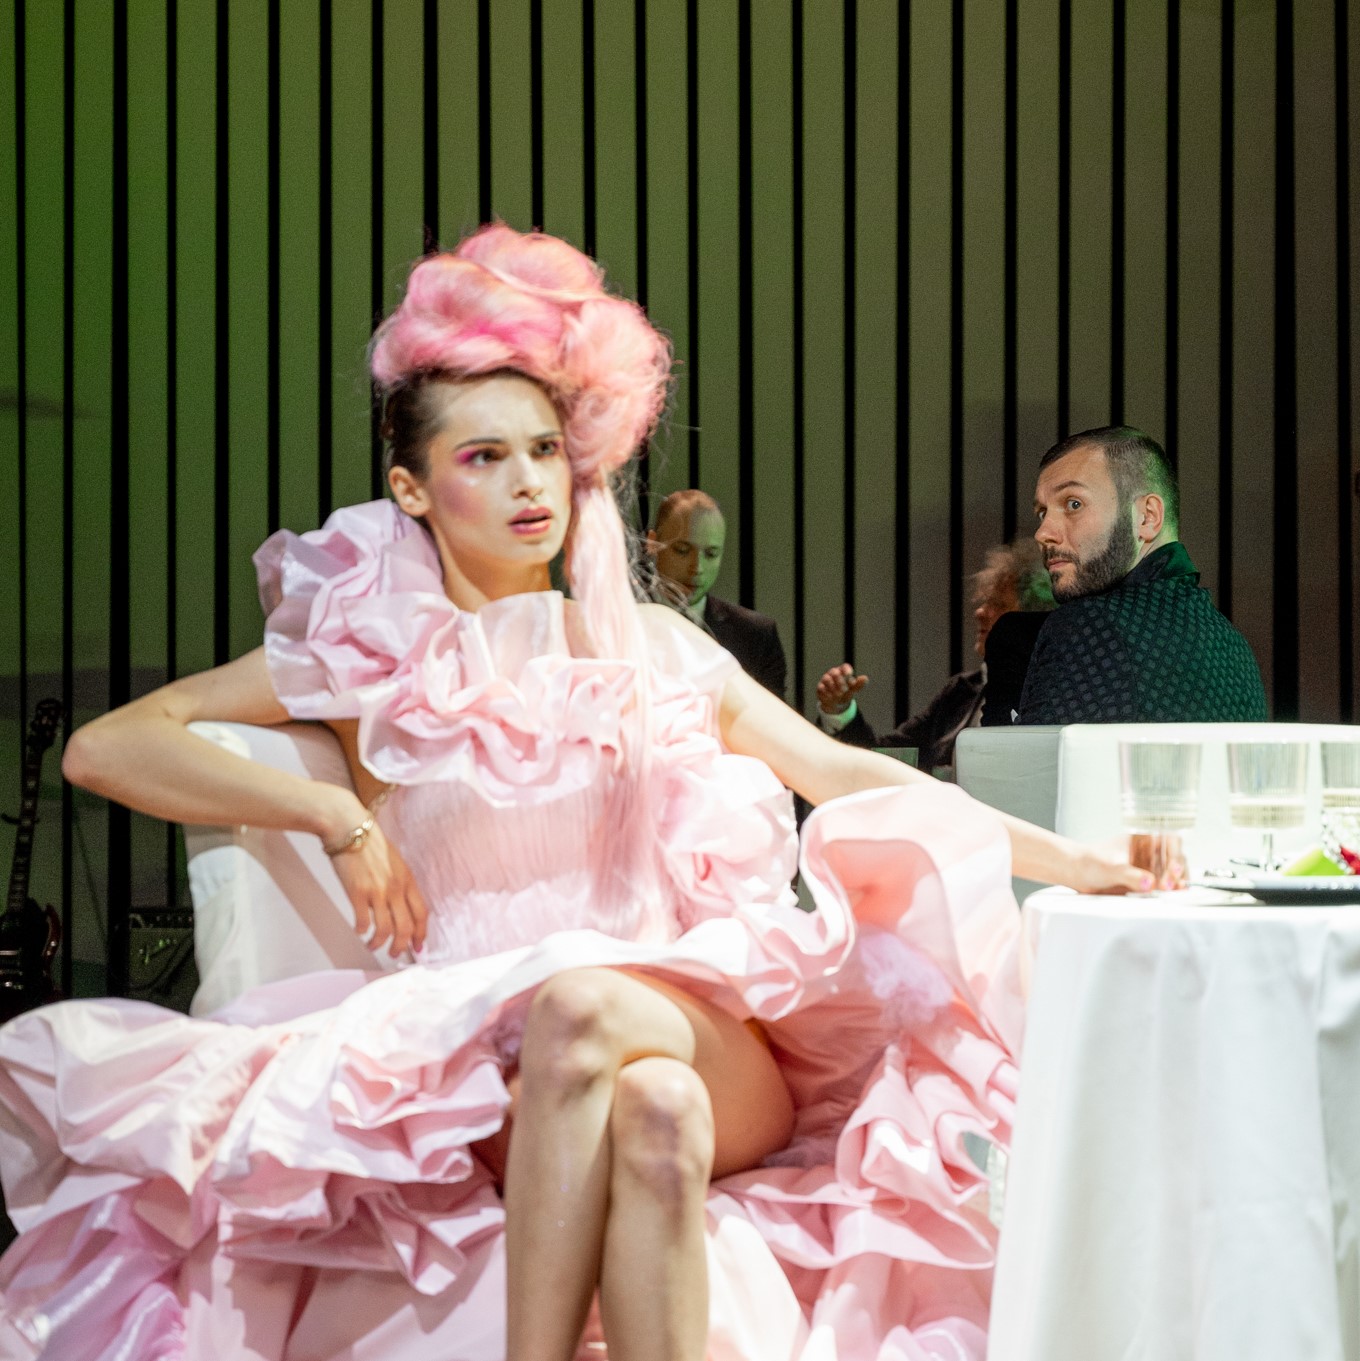 Aktorka w strojnej różowej sukni i różowej peruce doczepionej na szczycie głowy siedzi przy stole z nogą założoną na nogę.